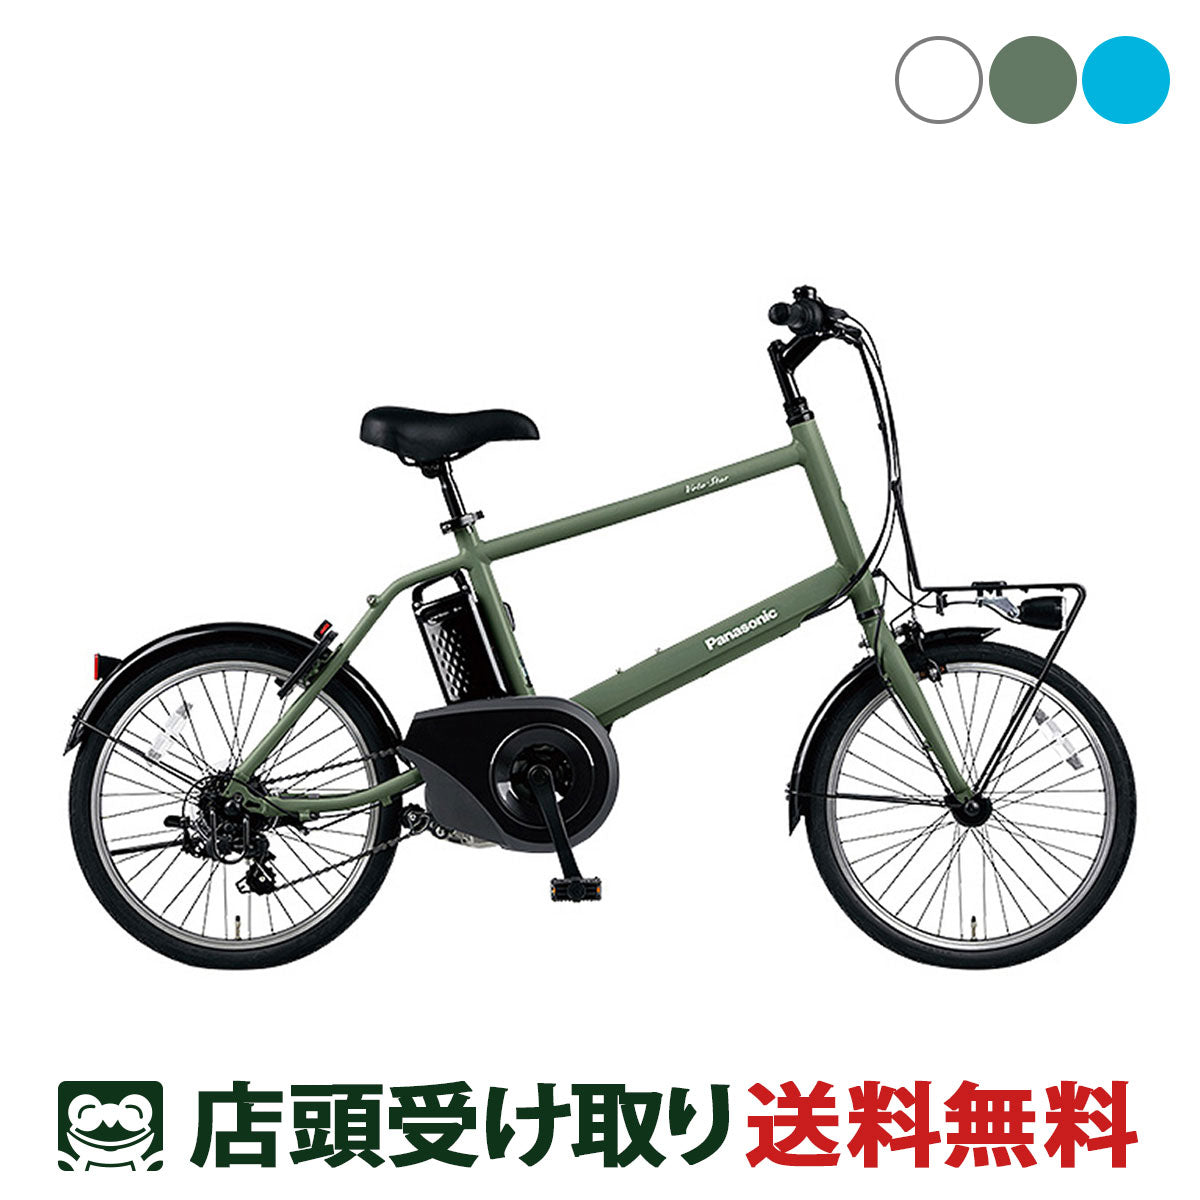 panasonic 電動自転車 - 電動アシスト自転車